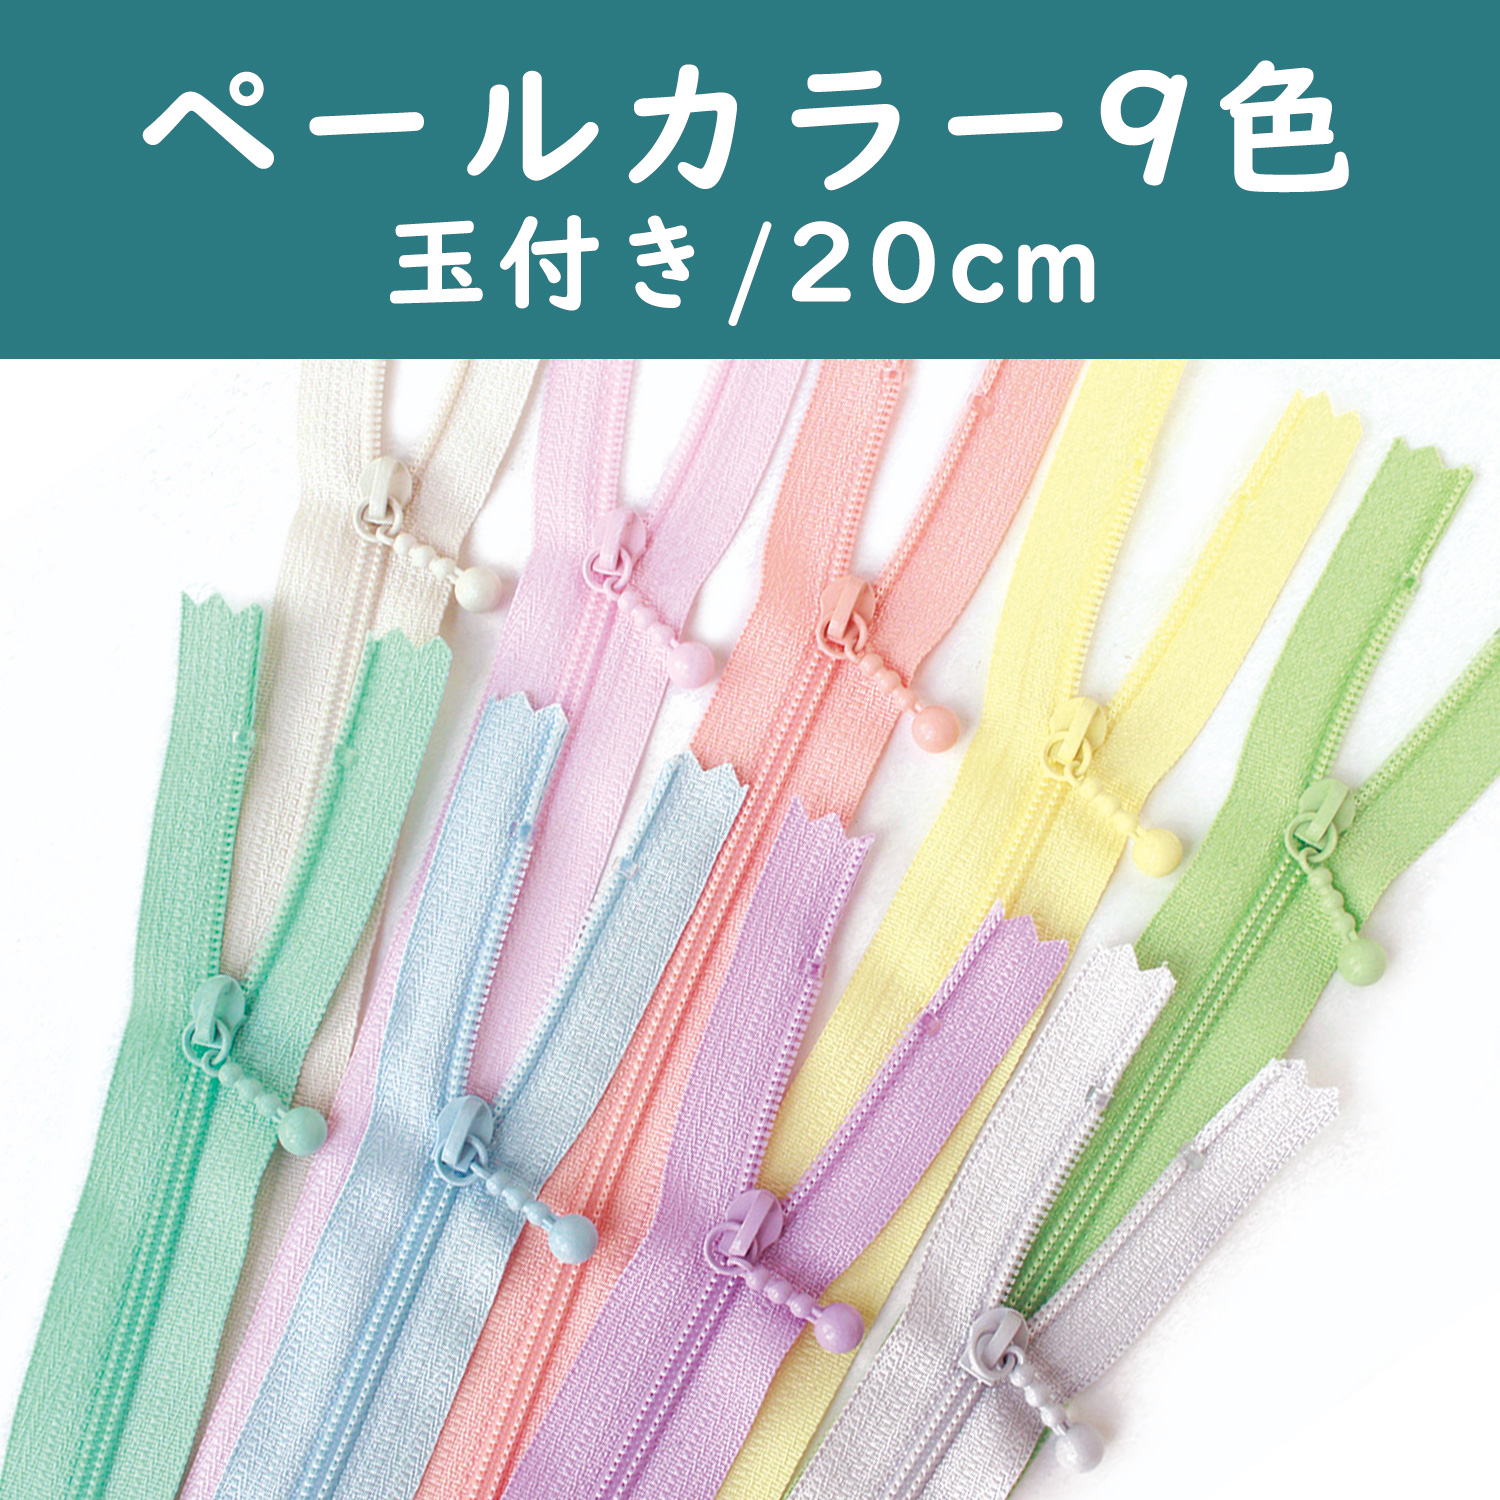 3CF20-PLMIX Pouch Fastener/Zipper Pale Color 20cm 9 Colors Set (bag)